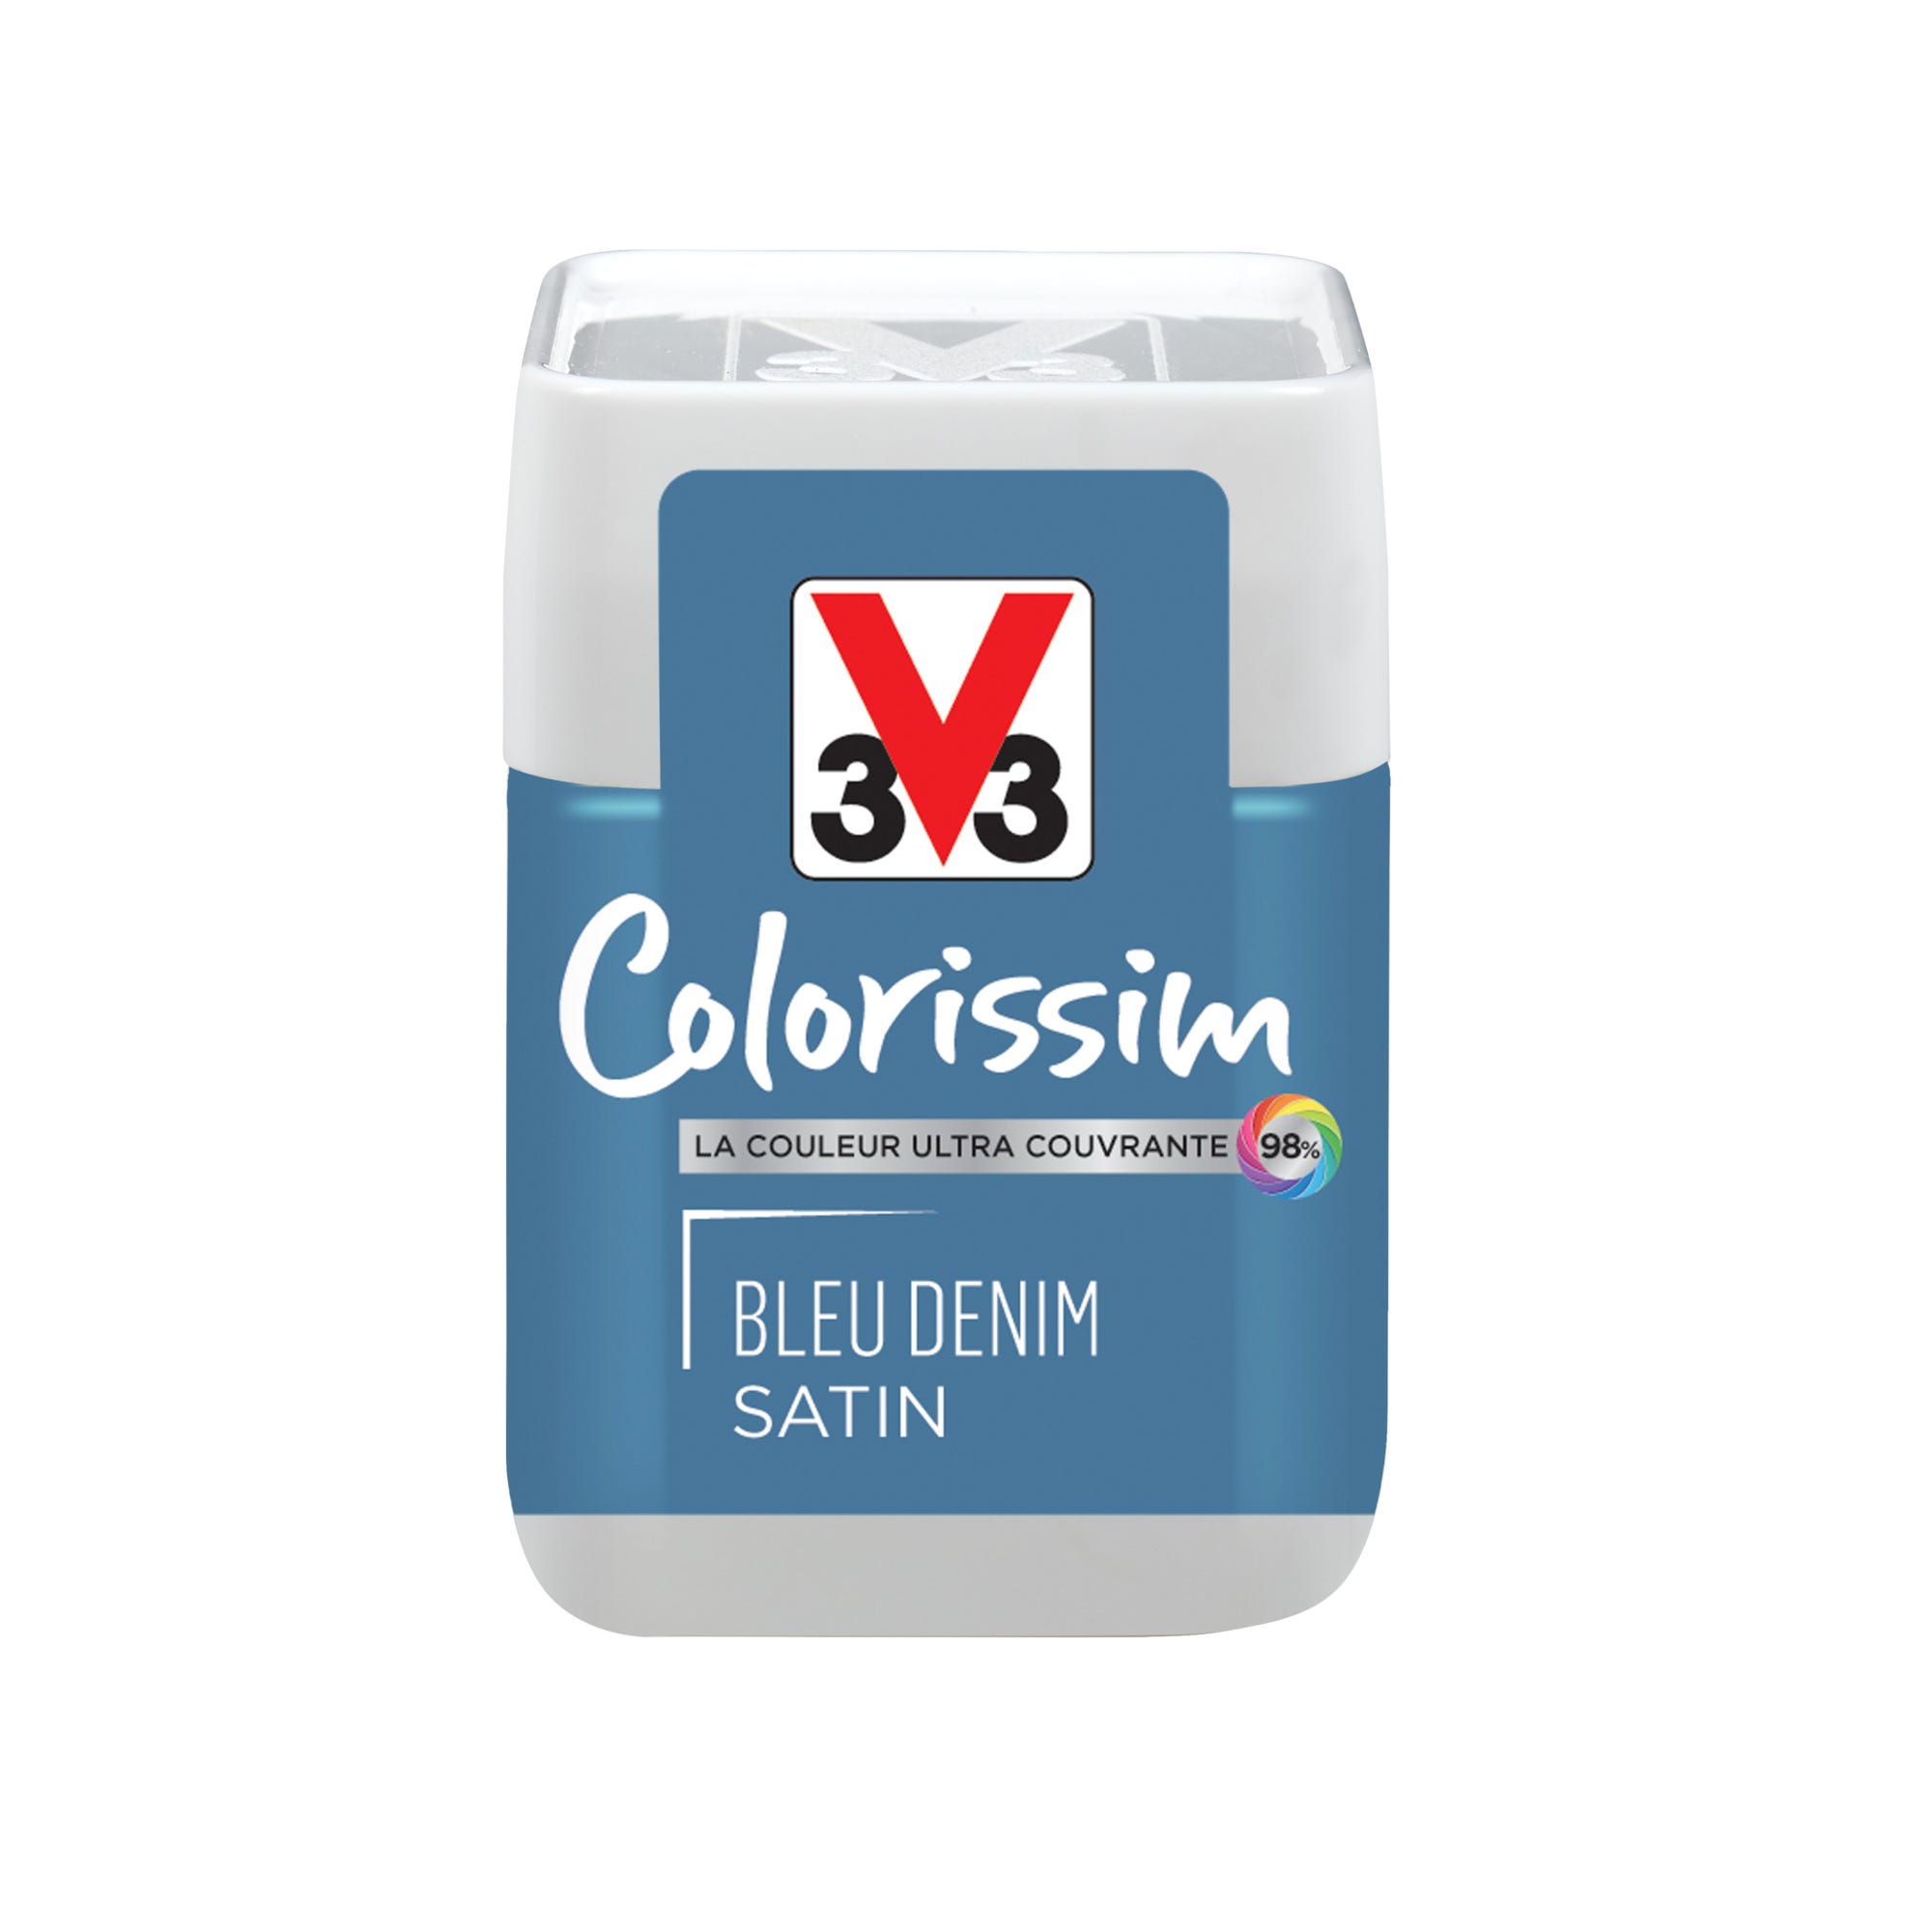 Peinture intérieure multi-supports testeur acrylique satin bleu denin 75 ml - V33 COLORISSIM 0